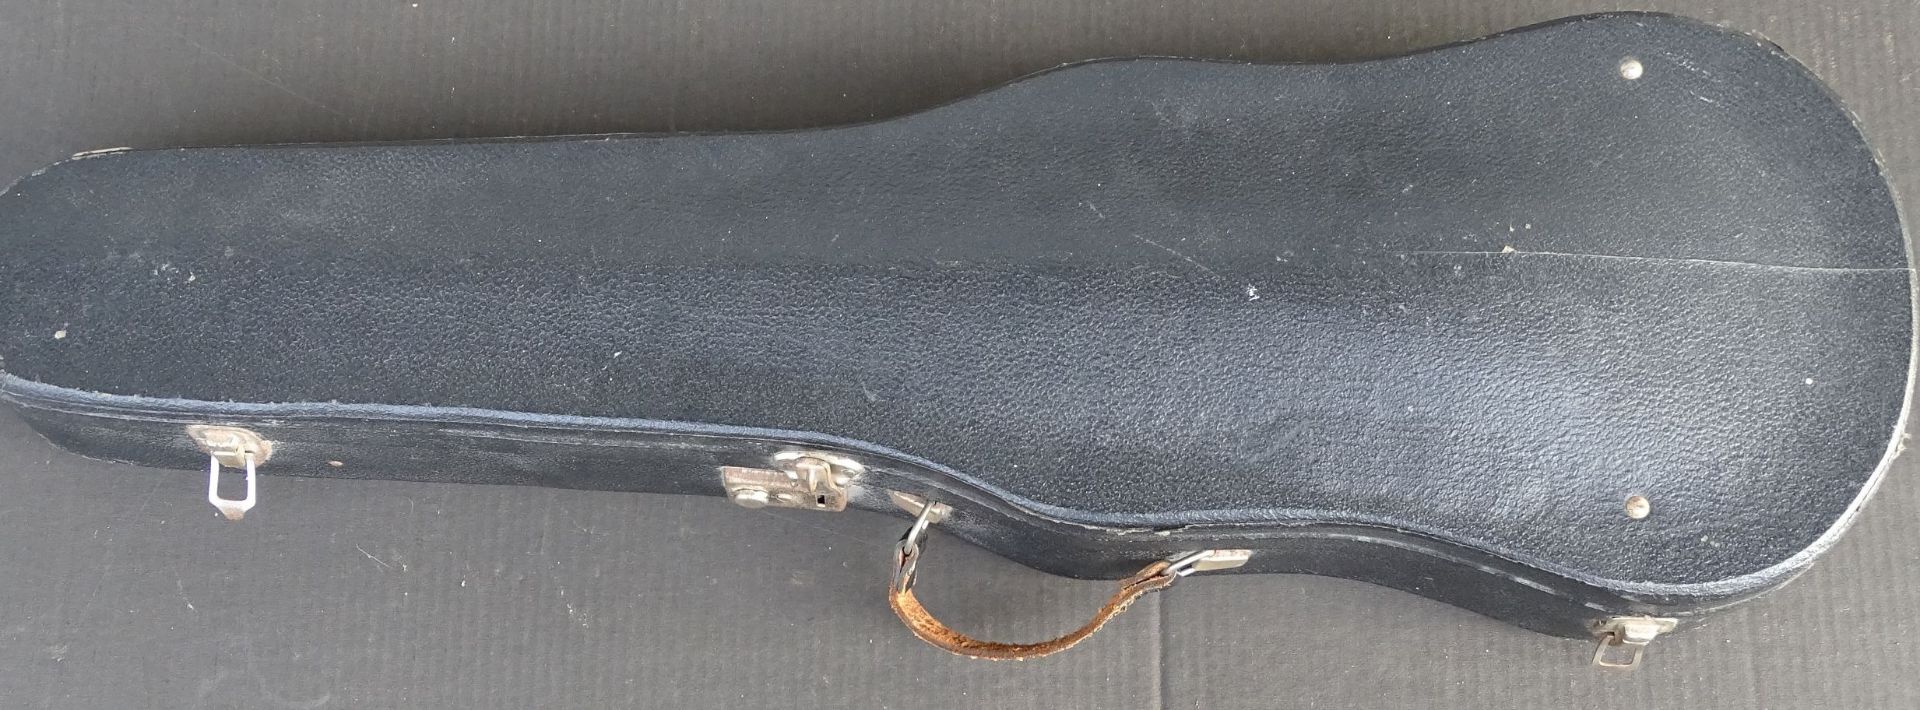 Geige mit Bogen in Koffer, L-55 cm, Gebrauchsspuren - Bild 2 aus 9